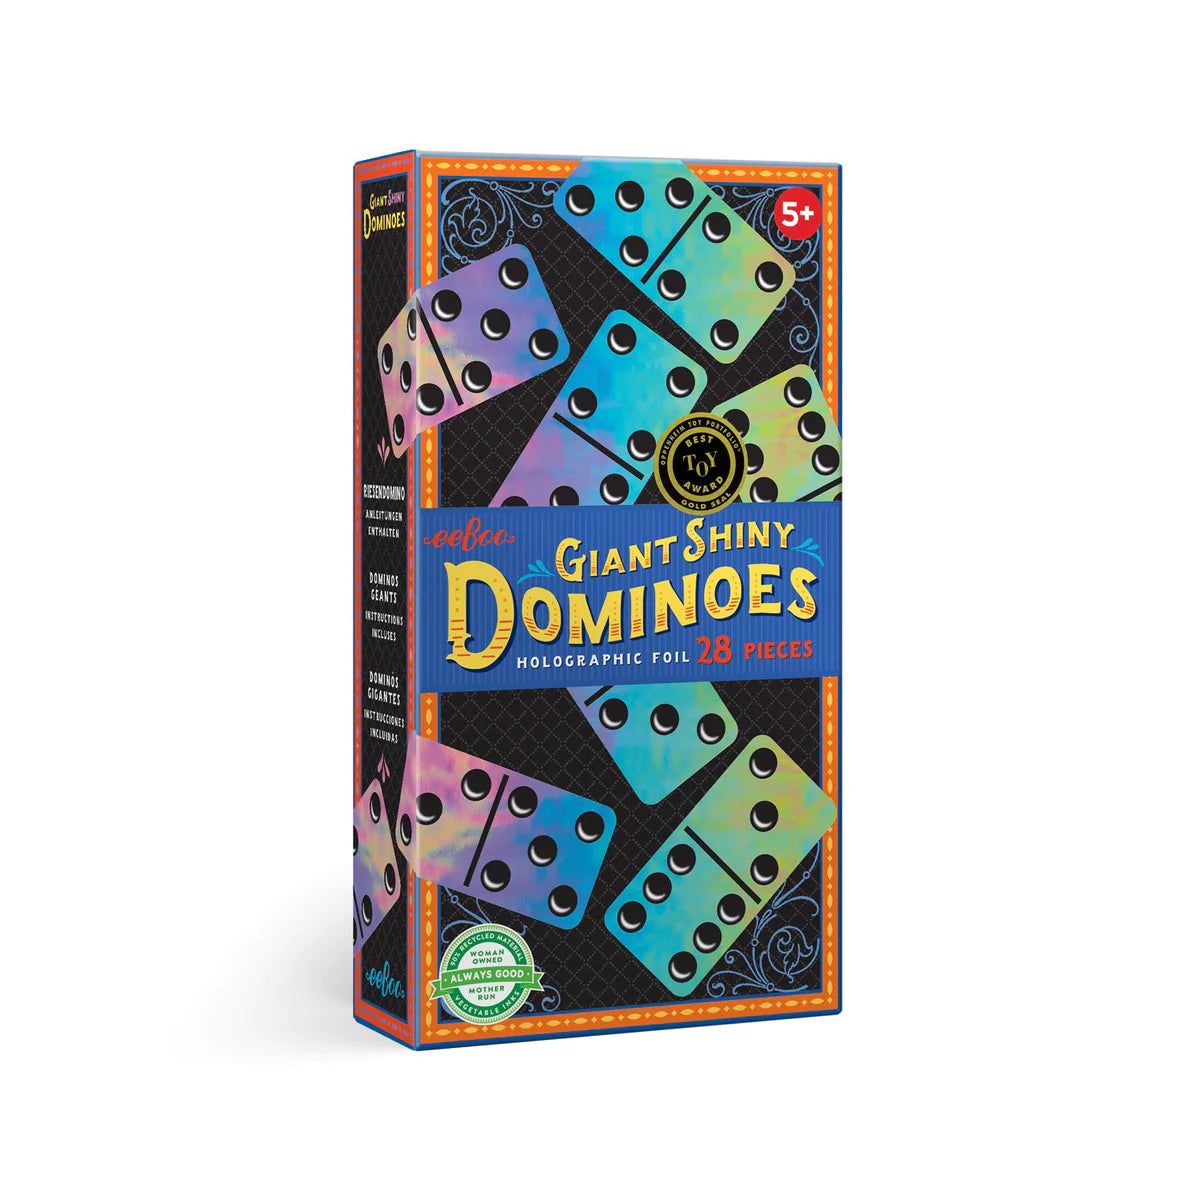 Shiny Dominoes